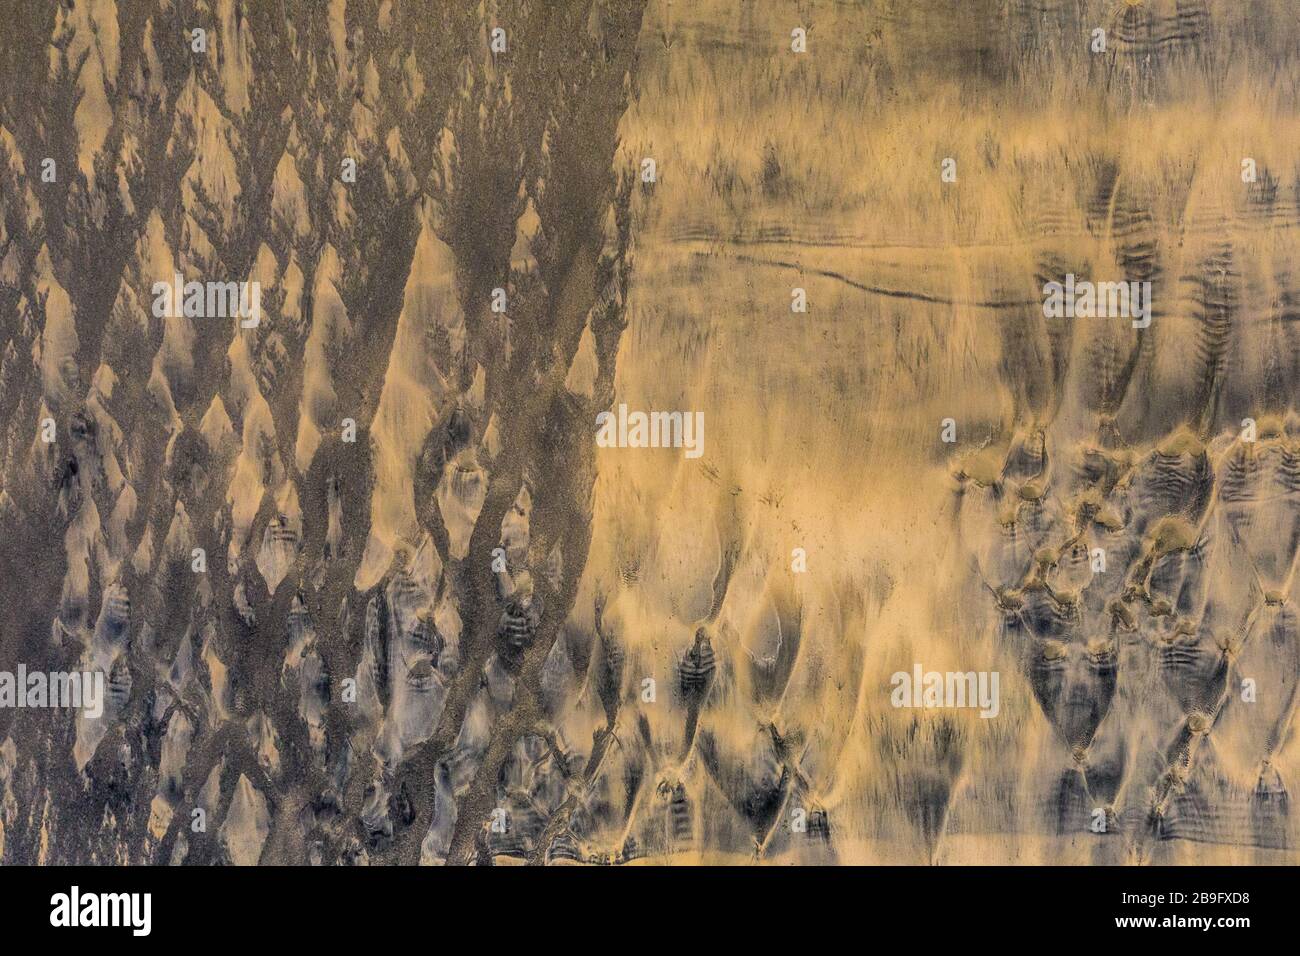 motifs inhabituels laissés dans le sable doré par marée sortante, image aérienne Banque D'Images